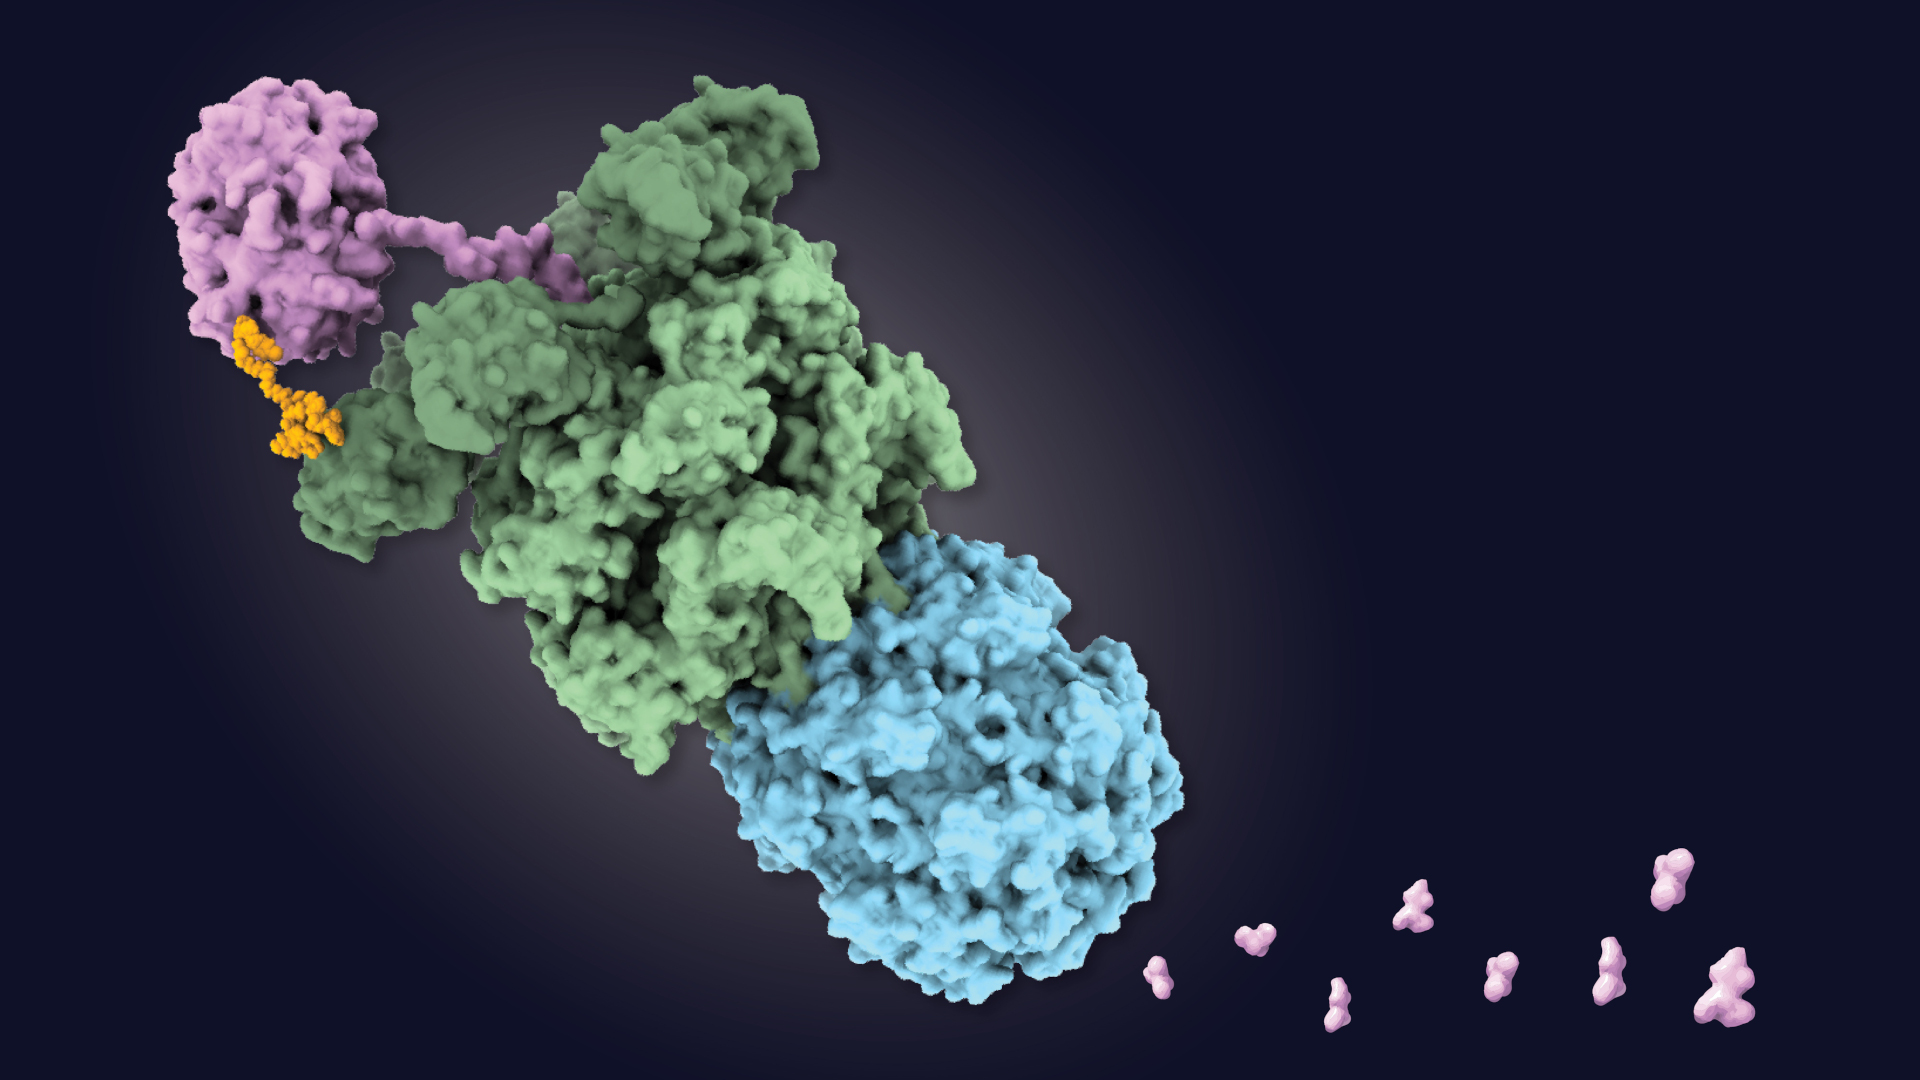 Das Zielprotein (rosa) bindet das orangefarbene BacPROTAC, wird daraufhin durch das grüne Enzym entfaltet und durch das blaue Enzym abgebaut.